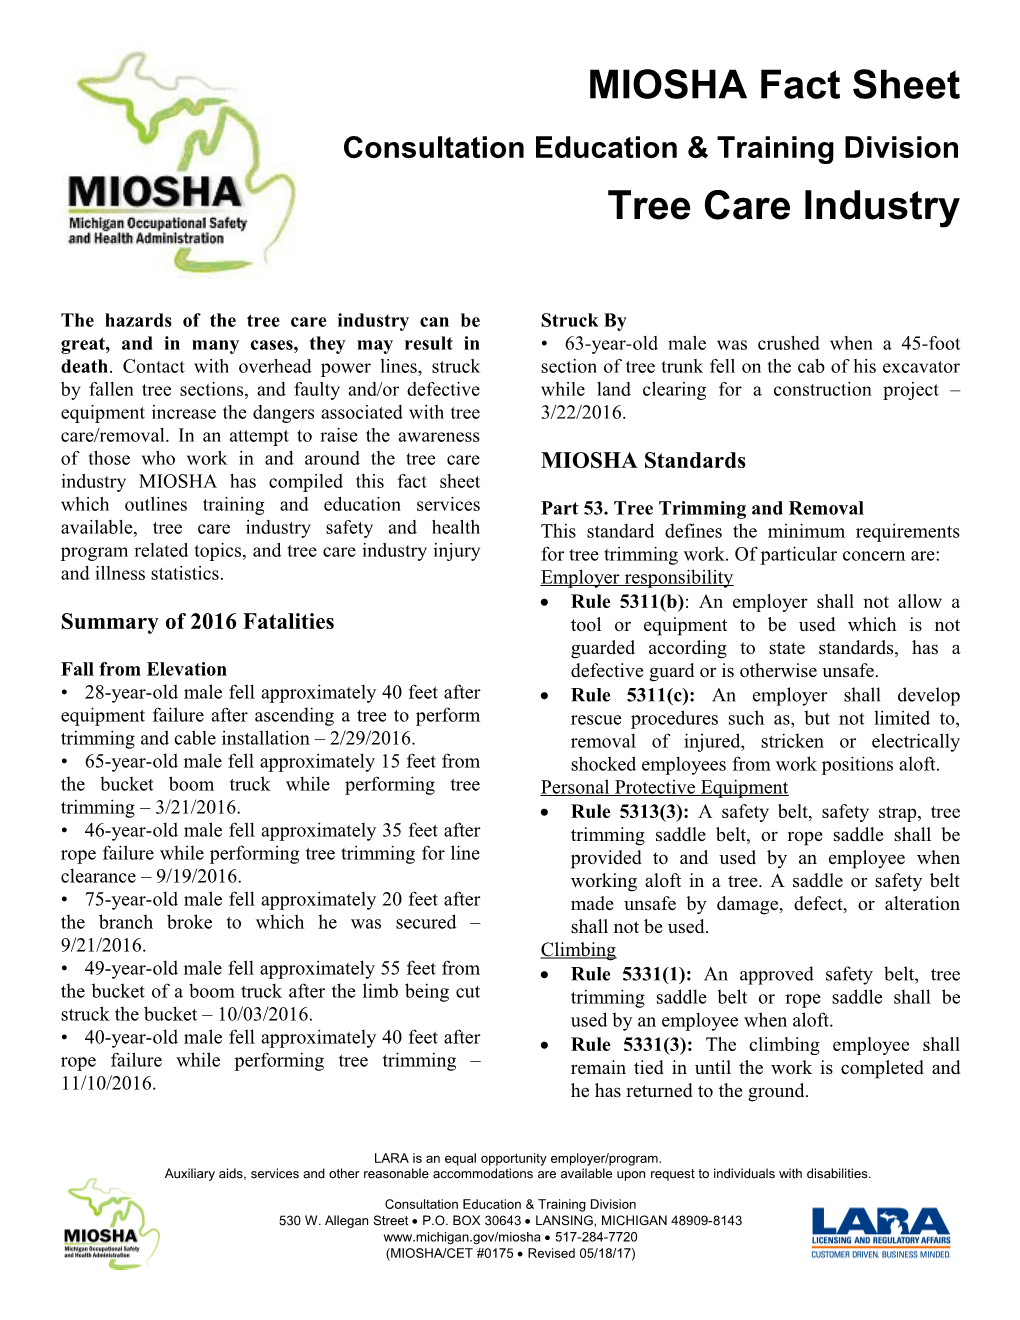 MIOSHA Fact Sheet: Tree Care Industry